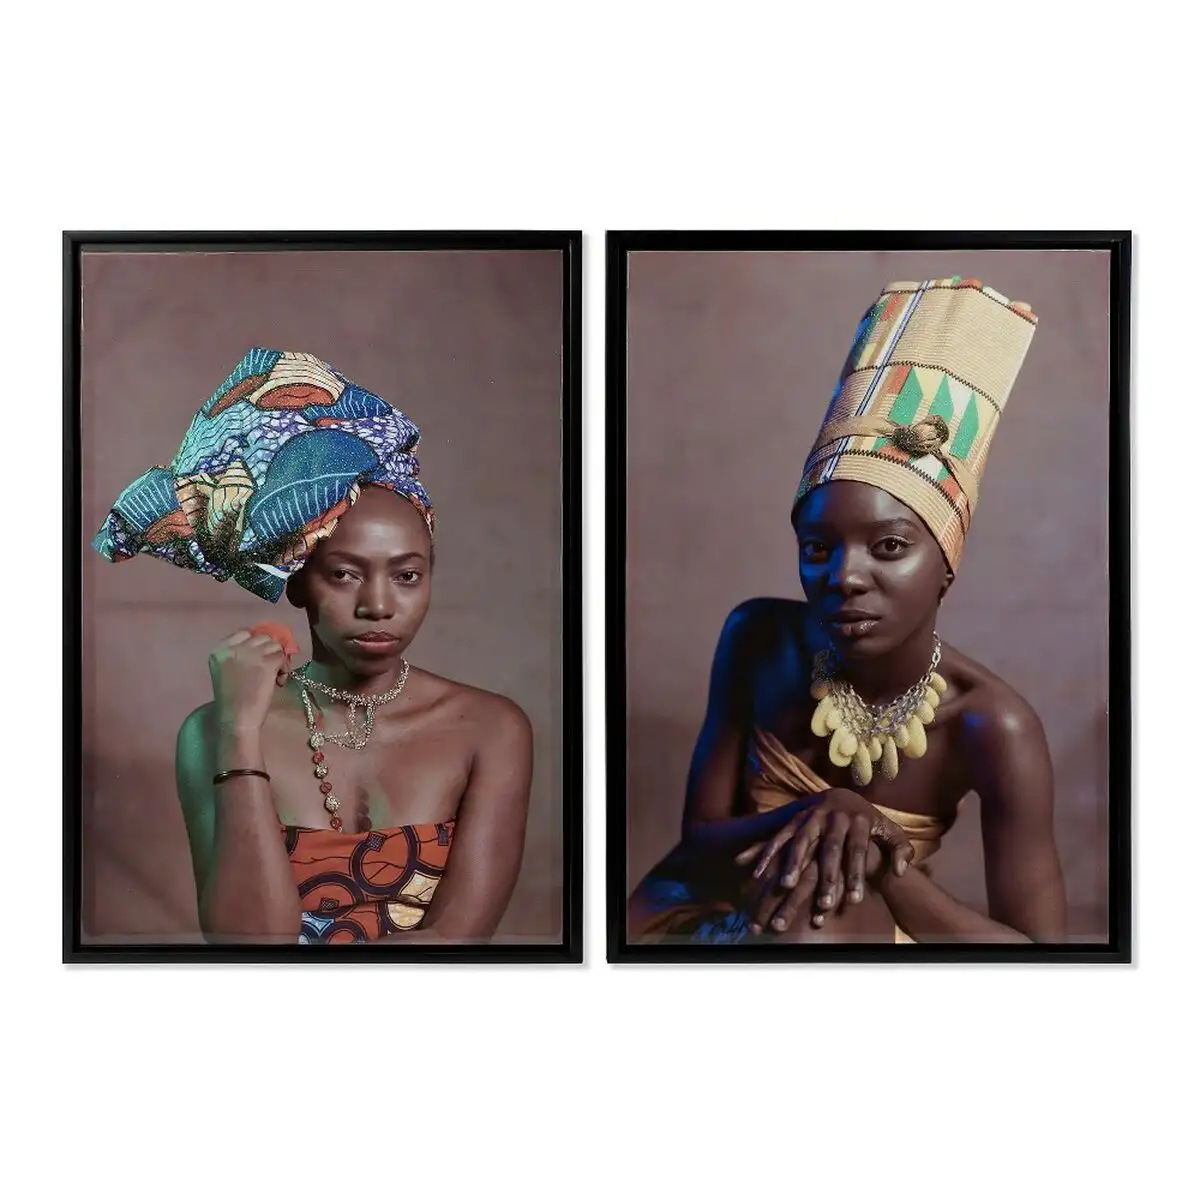 Peinture dkd home decor art africain 65 x 3 5 x 90 cm femme africaine coloniale laque e 2 unite s_2555. DIAYTAR SENEGAL - Votre Destination Shopping Exquise. Explorez notre boutique en ligne et découvrez des trésors qui ajoutent une touche de sophistication à votre style et à votre espace.